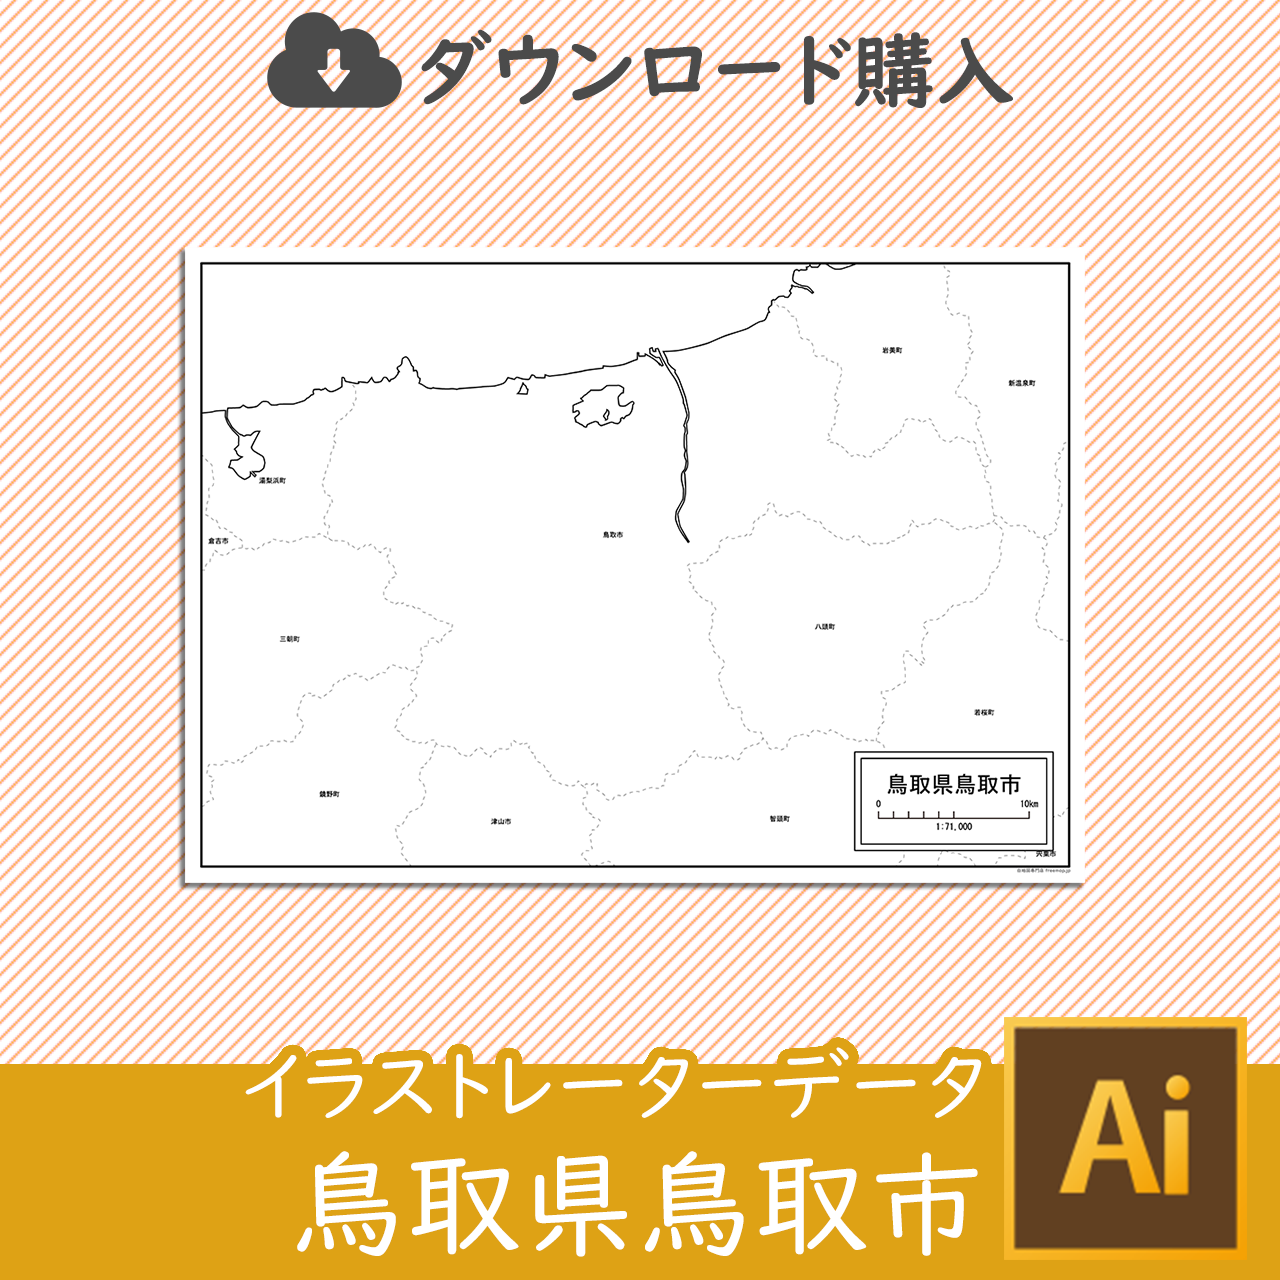 鳥取市のaiデータのサムネイル画像